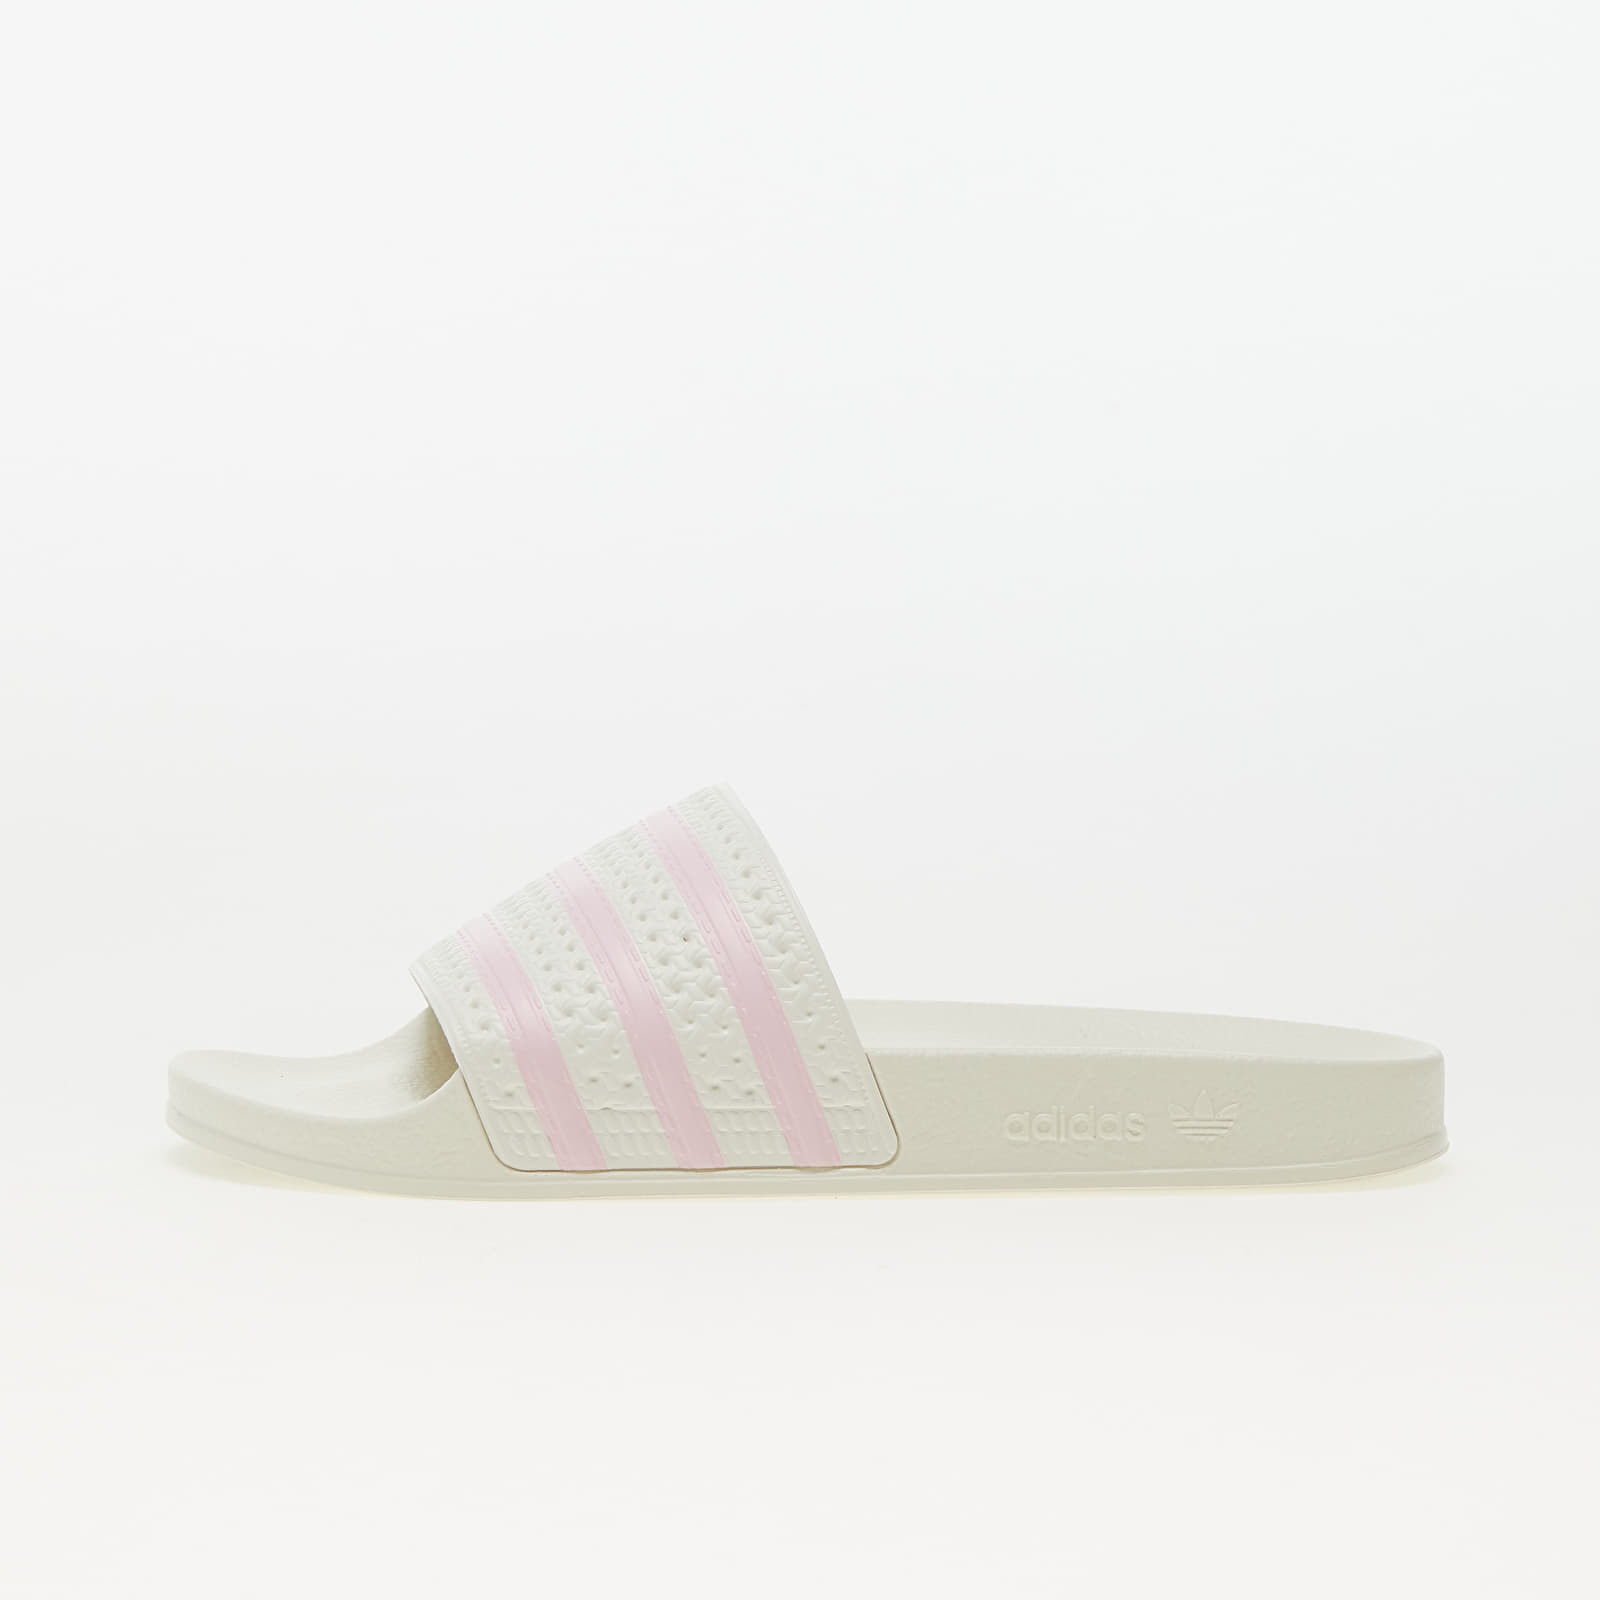 Γυναικεία παπούτσια adidas Adilette W Off White/ Clear Pink/ Off White